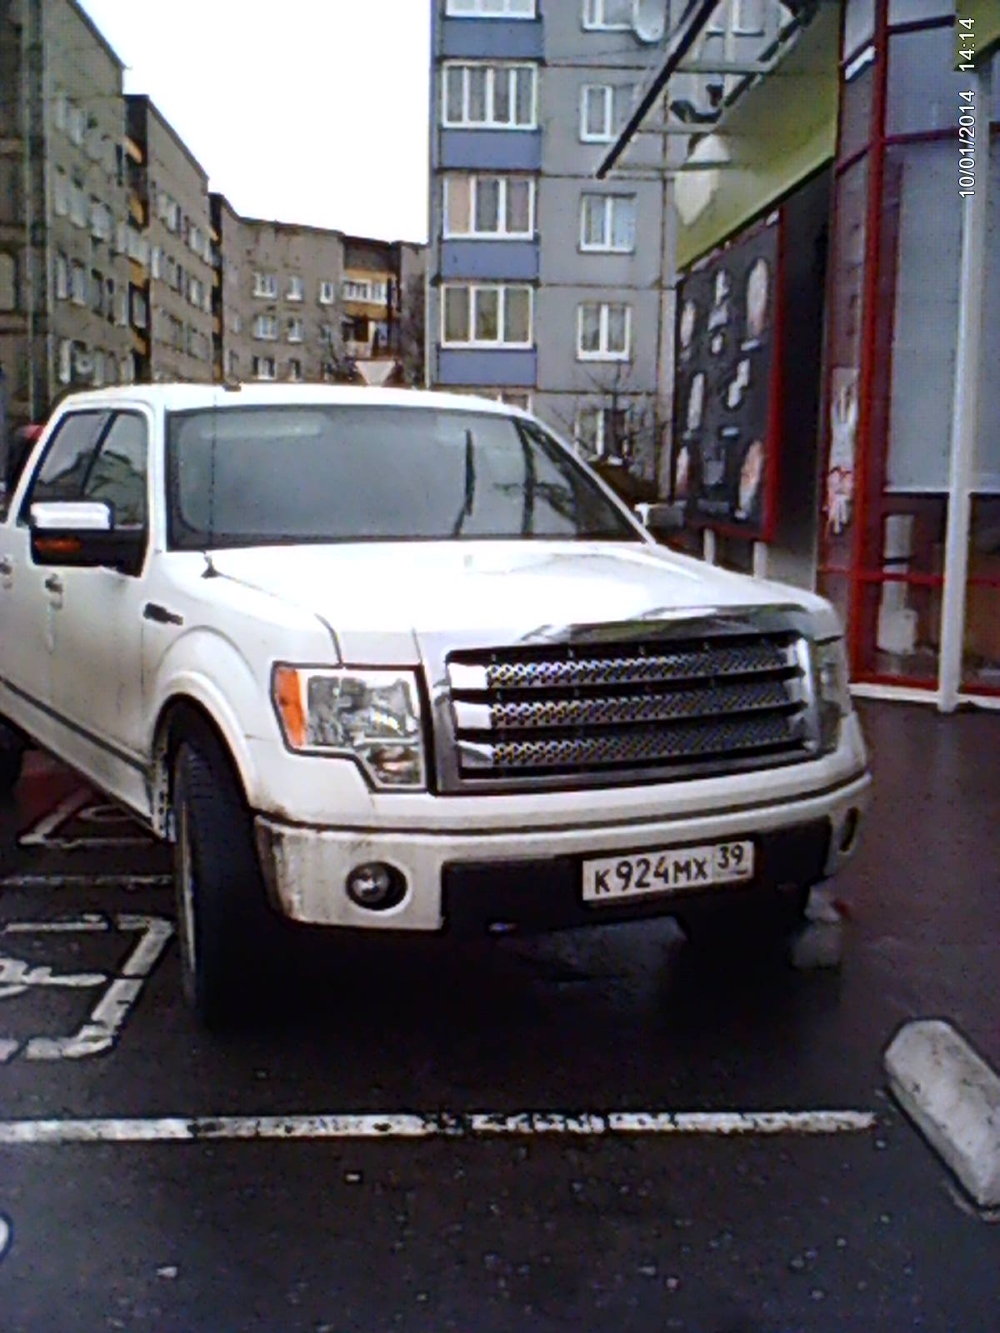 Быдло, паркующееся на местах для инвалидов -  желаю вам  инвалидность!